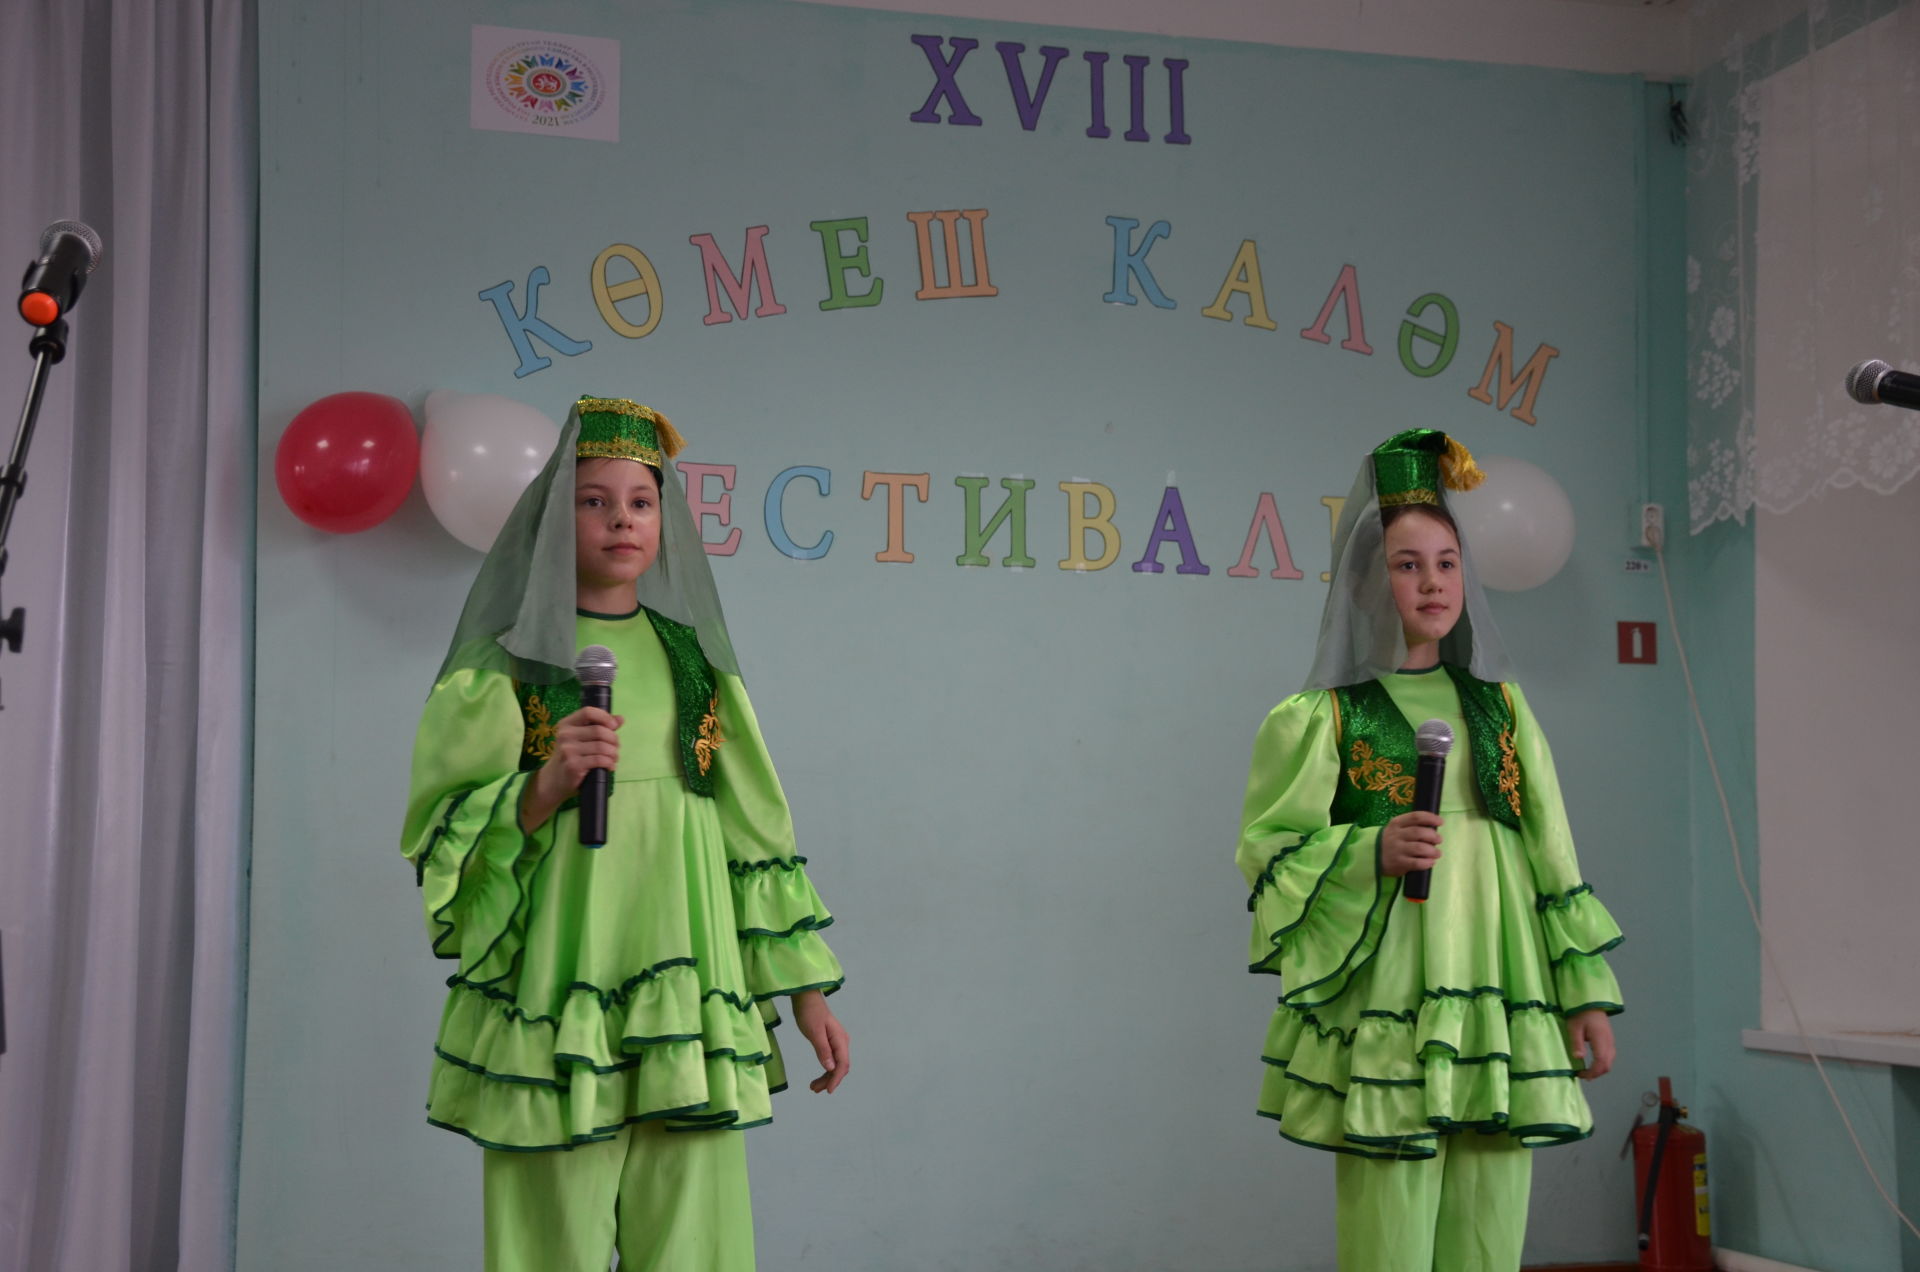 Әгерҗе районы Девятерня мәктәбендә XVIII «Көмеш каләм» фестивале үтте.